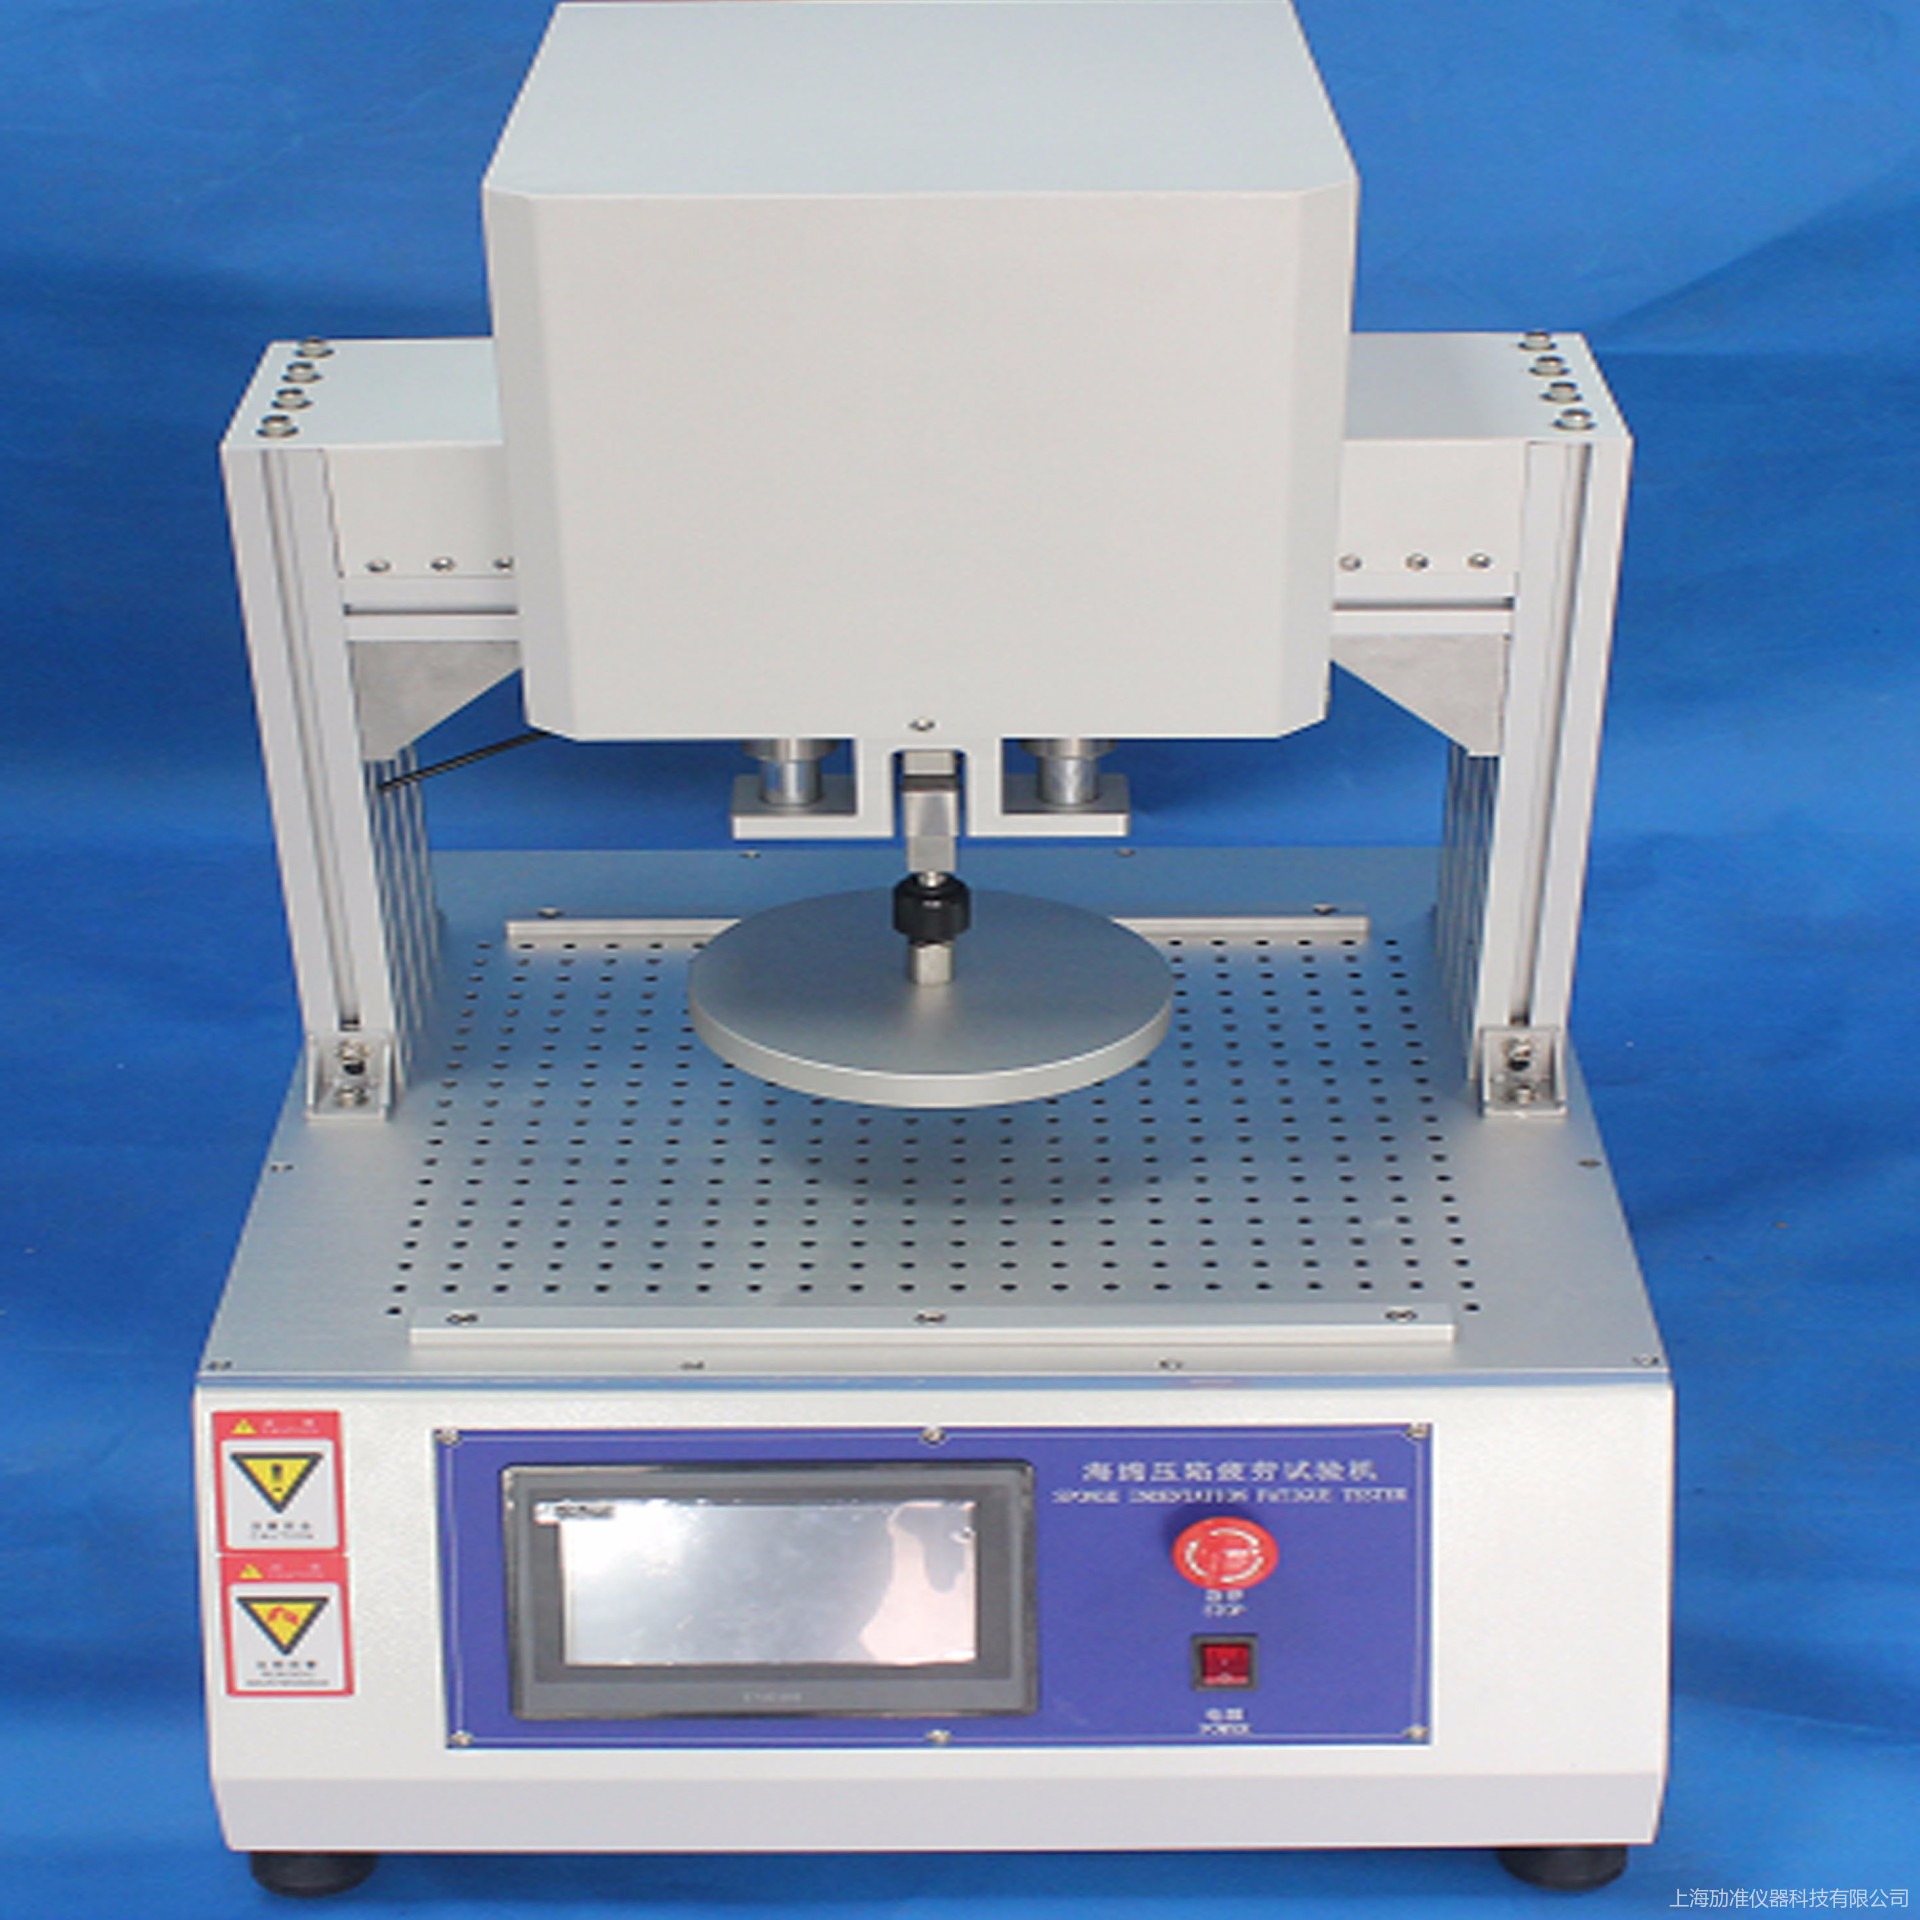 海绵压陷硬度试验机 海绵泡沫压陷测试仪 劢准 MZ-A201 压陷硬度测试仪图片